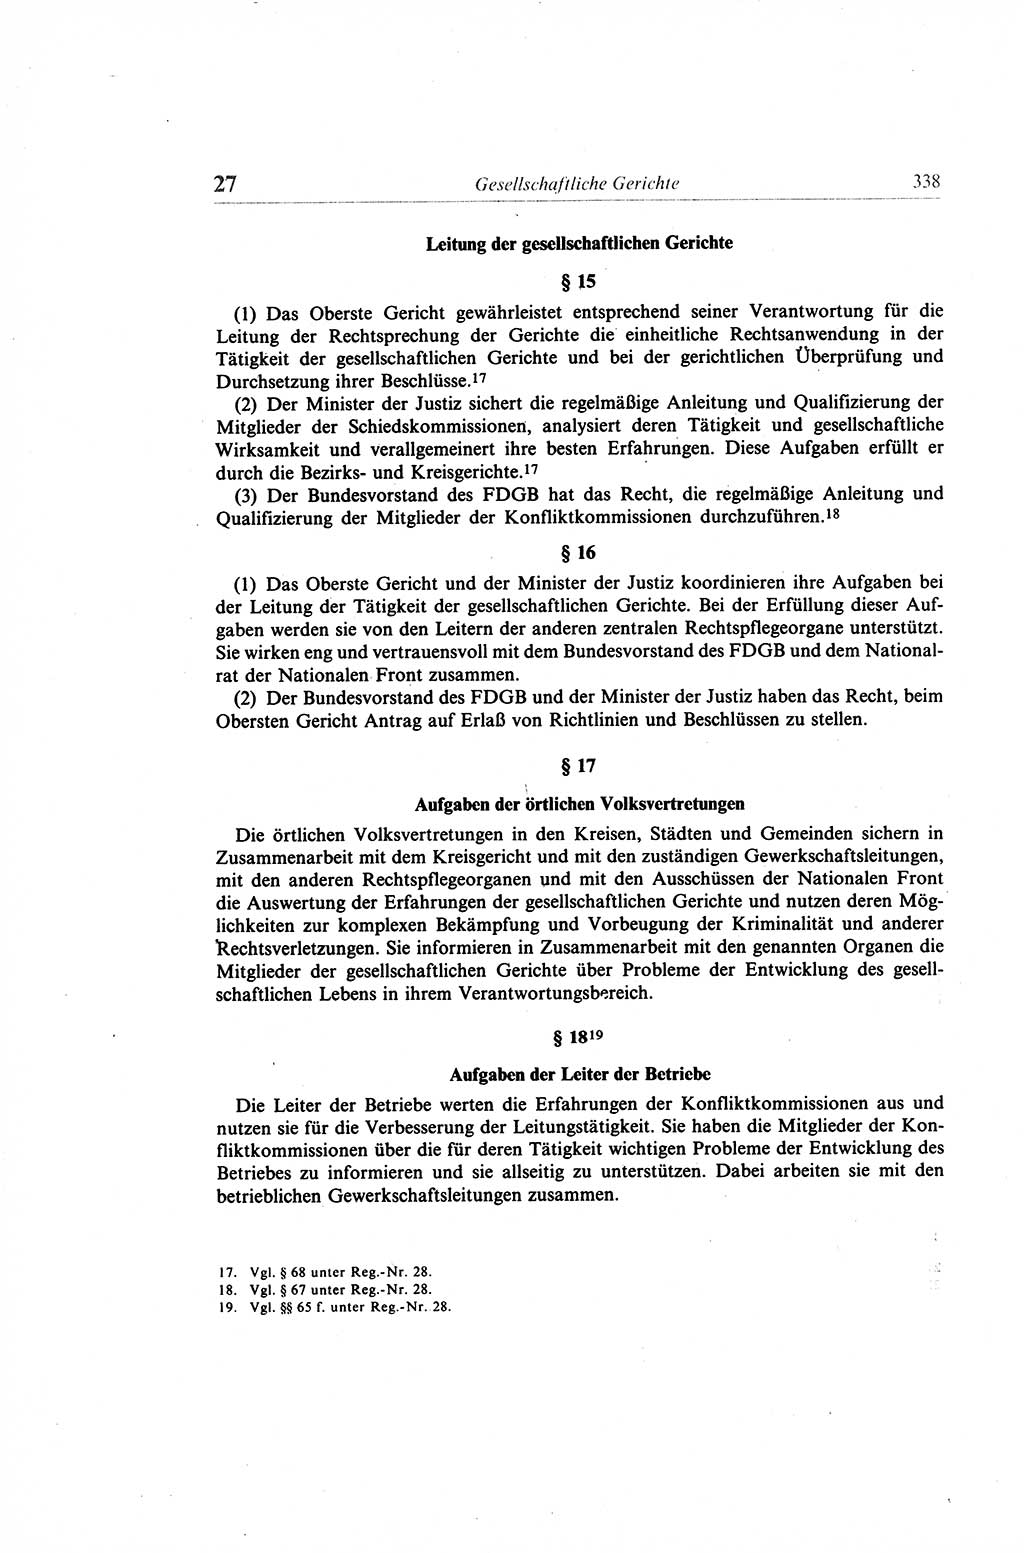 Gesetzbuch der Arbeit (GBA) und andere ausgewählte rechtliche Bestimmungen [Deutsche Demokratische Republik (DDR)] 1968, Seite 338 (GBA DDR 1968, S. 338)